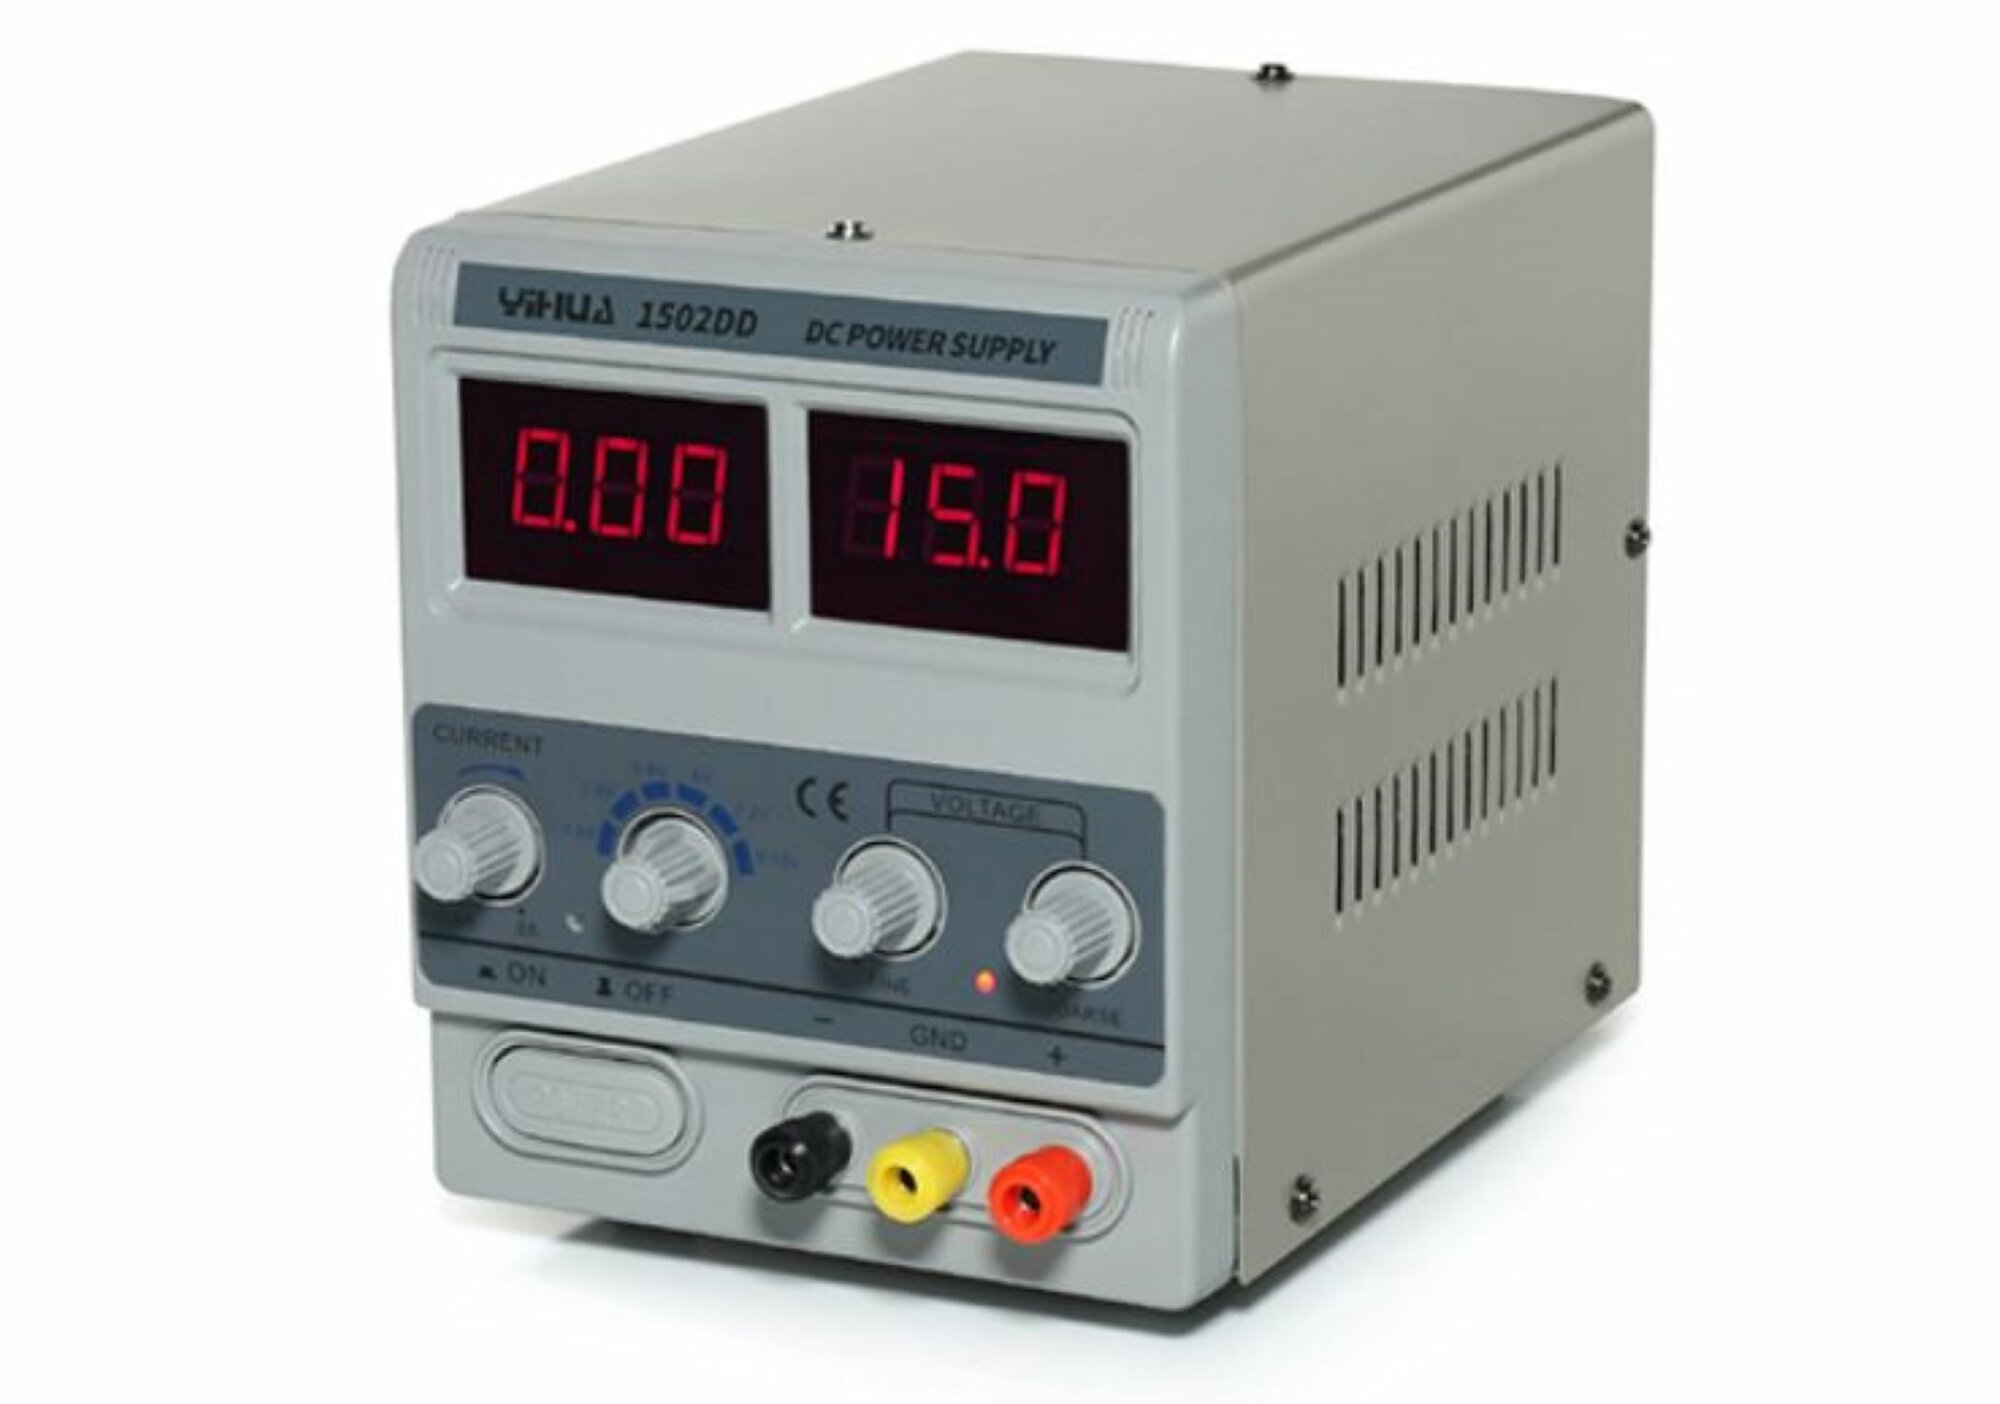 Лабораторный блок питания постоянного напряжения YH-1502DD 15В, 2А, цифровой индикатор